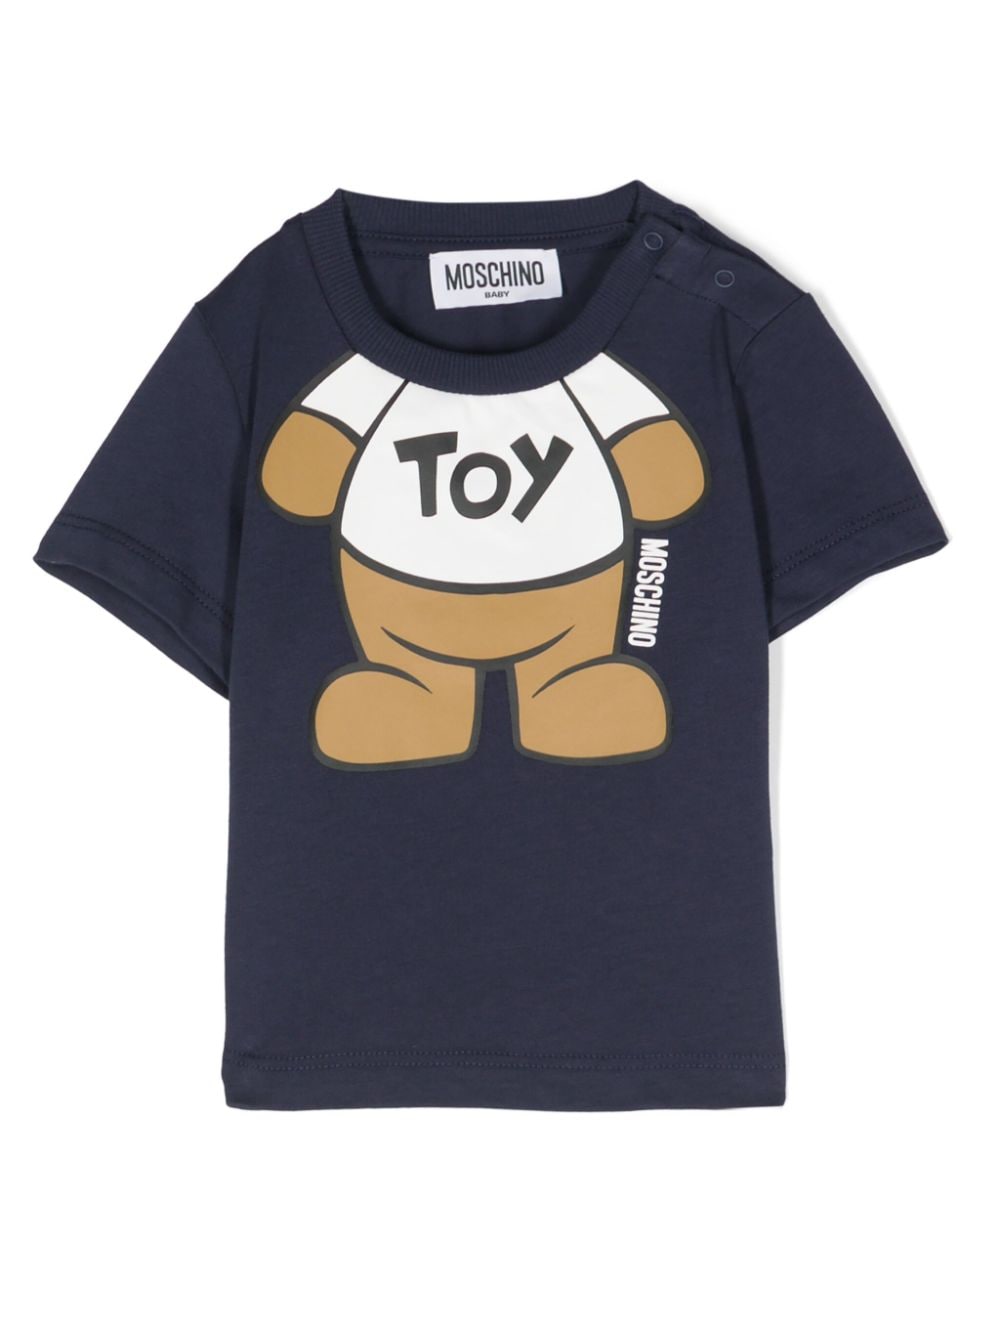 Moschino Kids T-Shirt mit Teddy - Blau von Moschino Kids